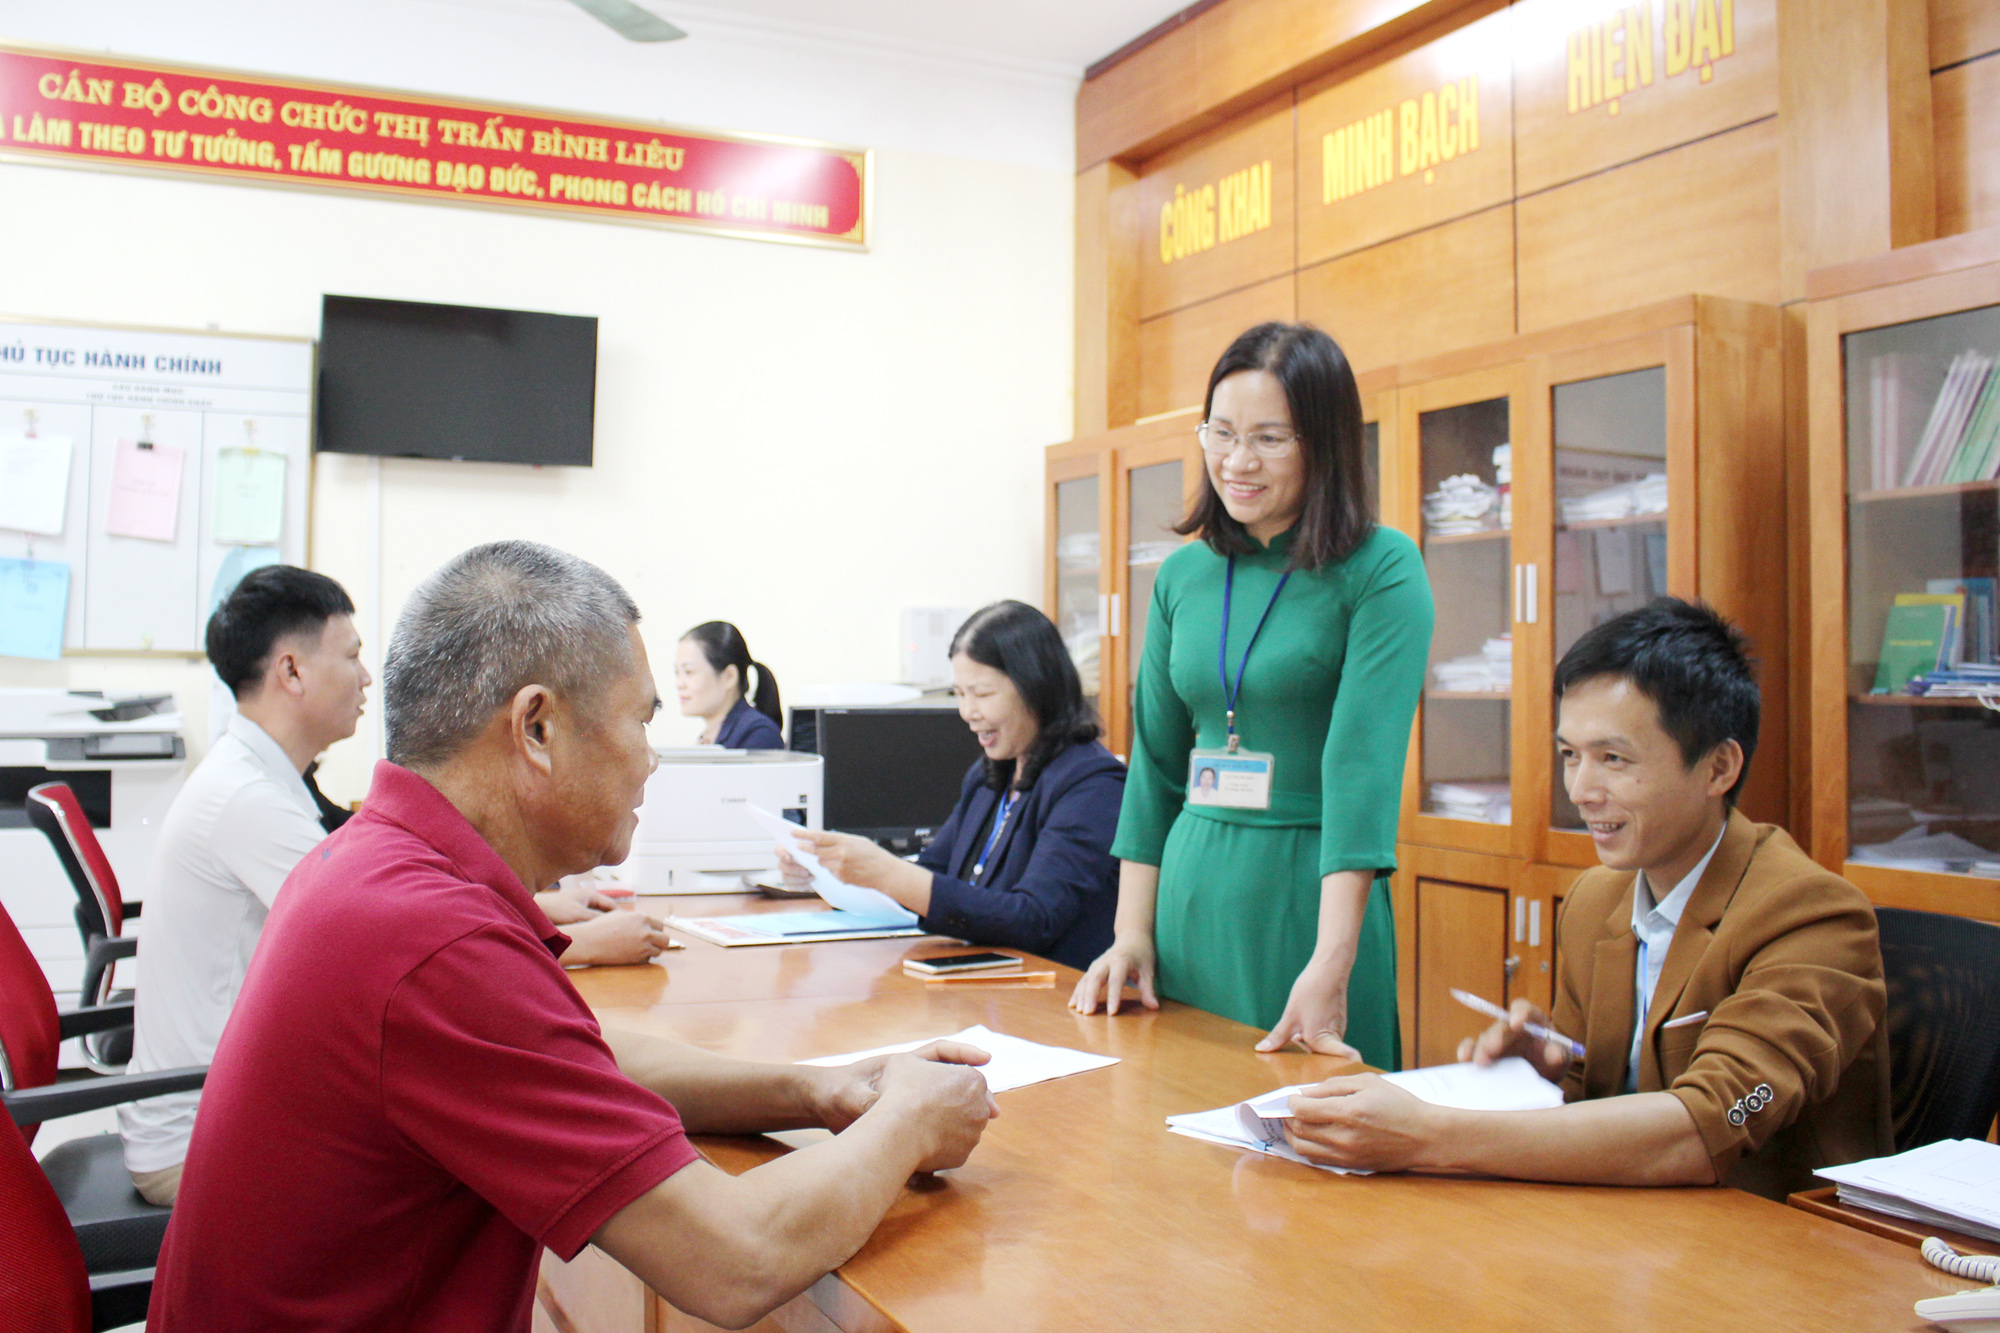 Đồng chí Hoàng Thị Nghị sau khi được điều động, bổ nhiệm giữ chức vụ Bí thư Đảng ủy, Chủ tịch UBND thị trấn Bình Liêu đã lãnh đạo, chỉ đạo  